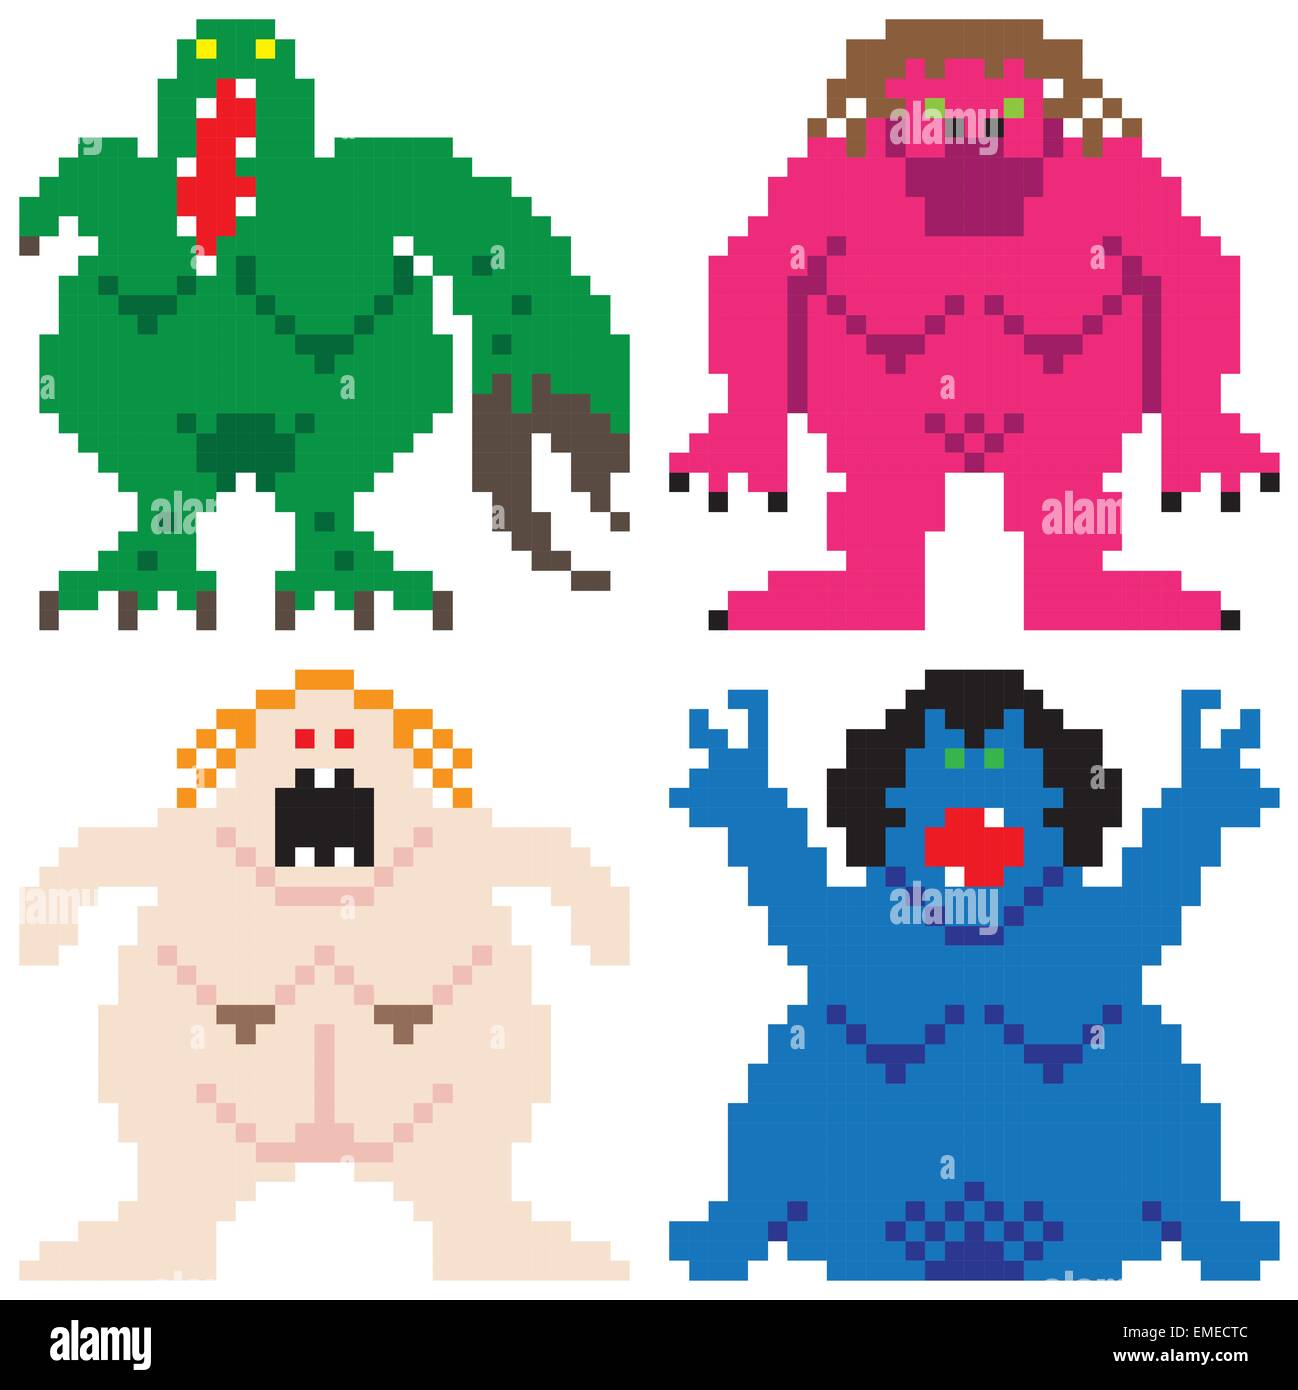 Peor Pesadilla monstruos terroríficos equipo retro pixel art Ilustración del Vector